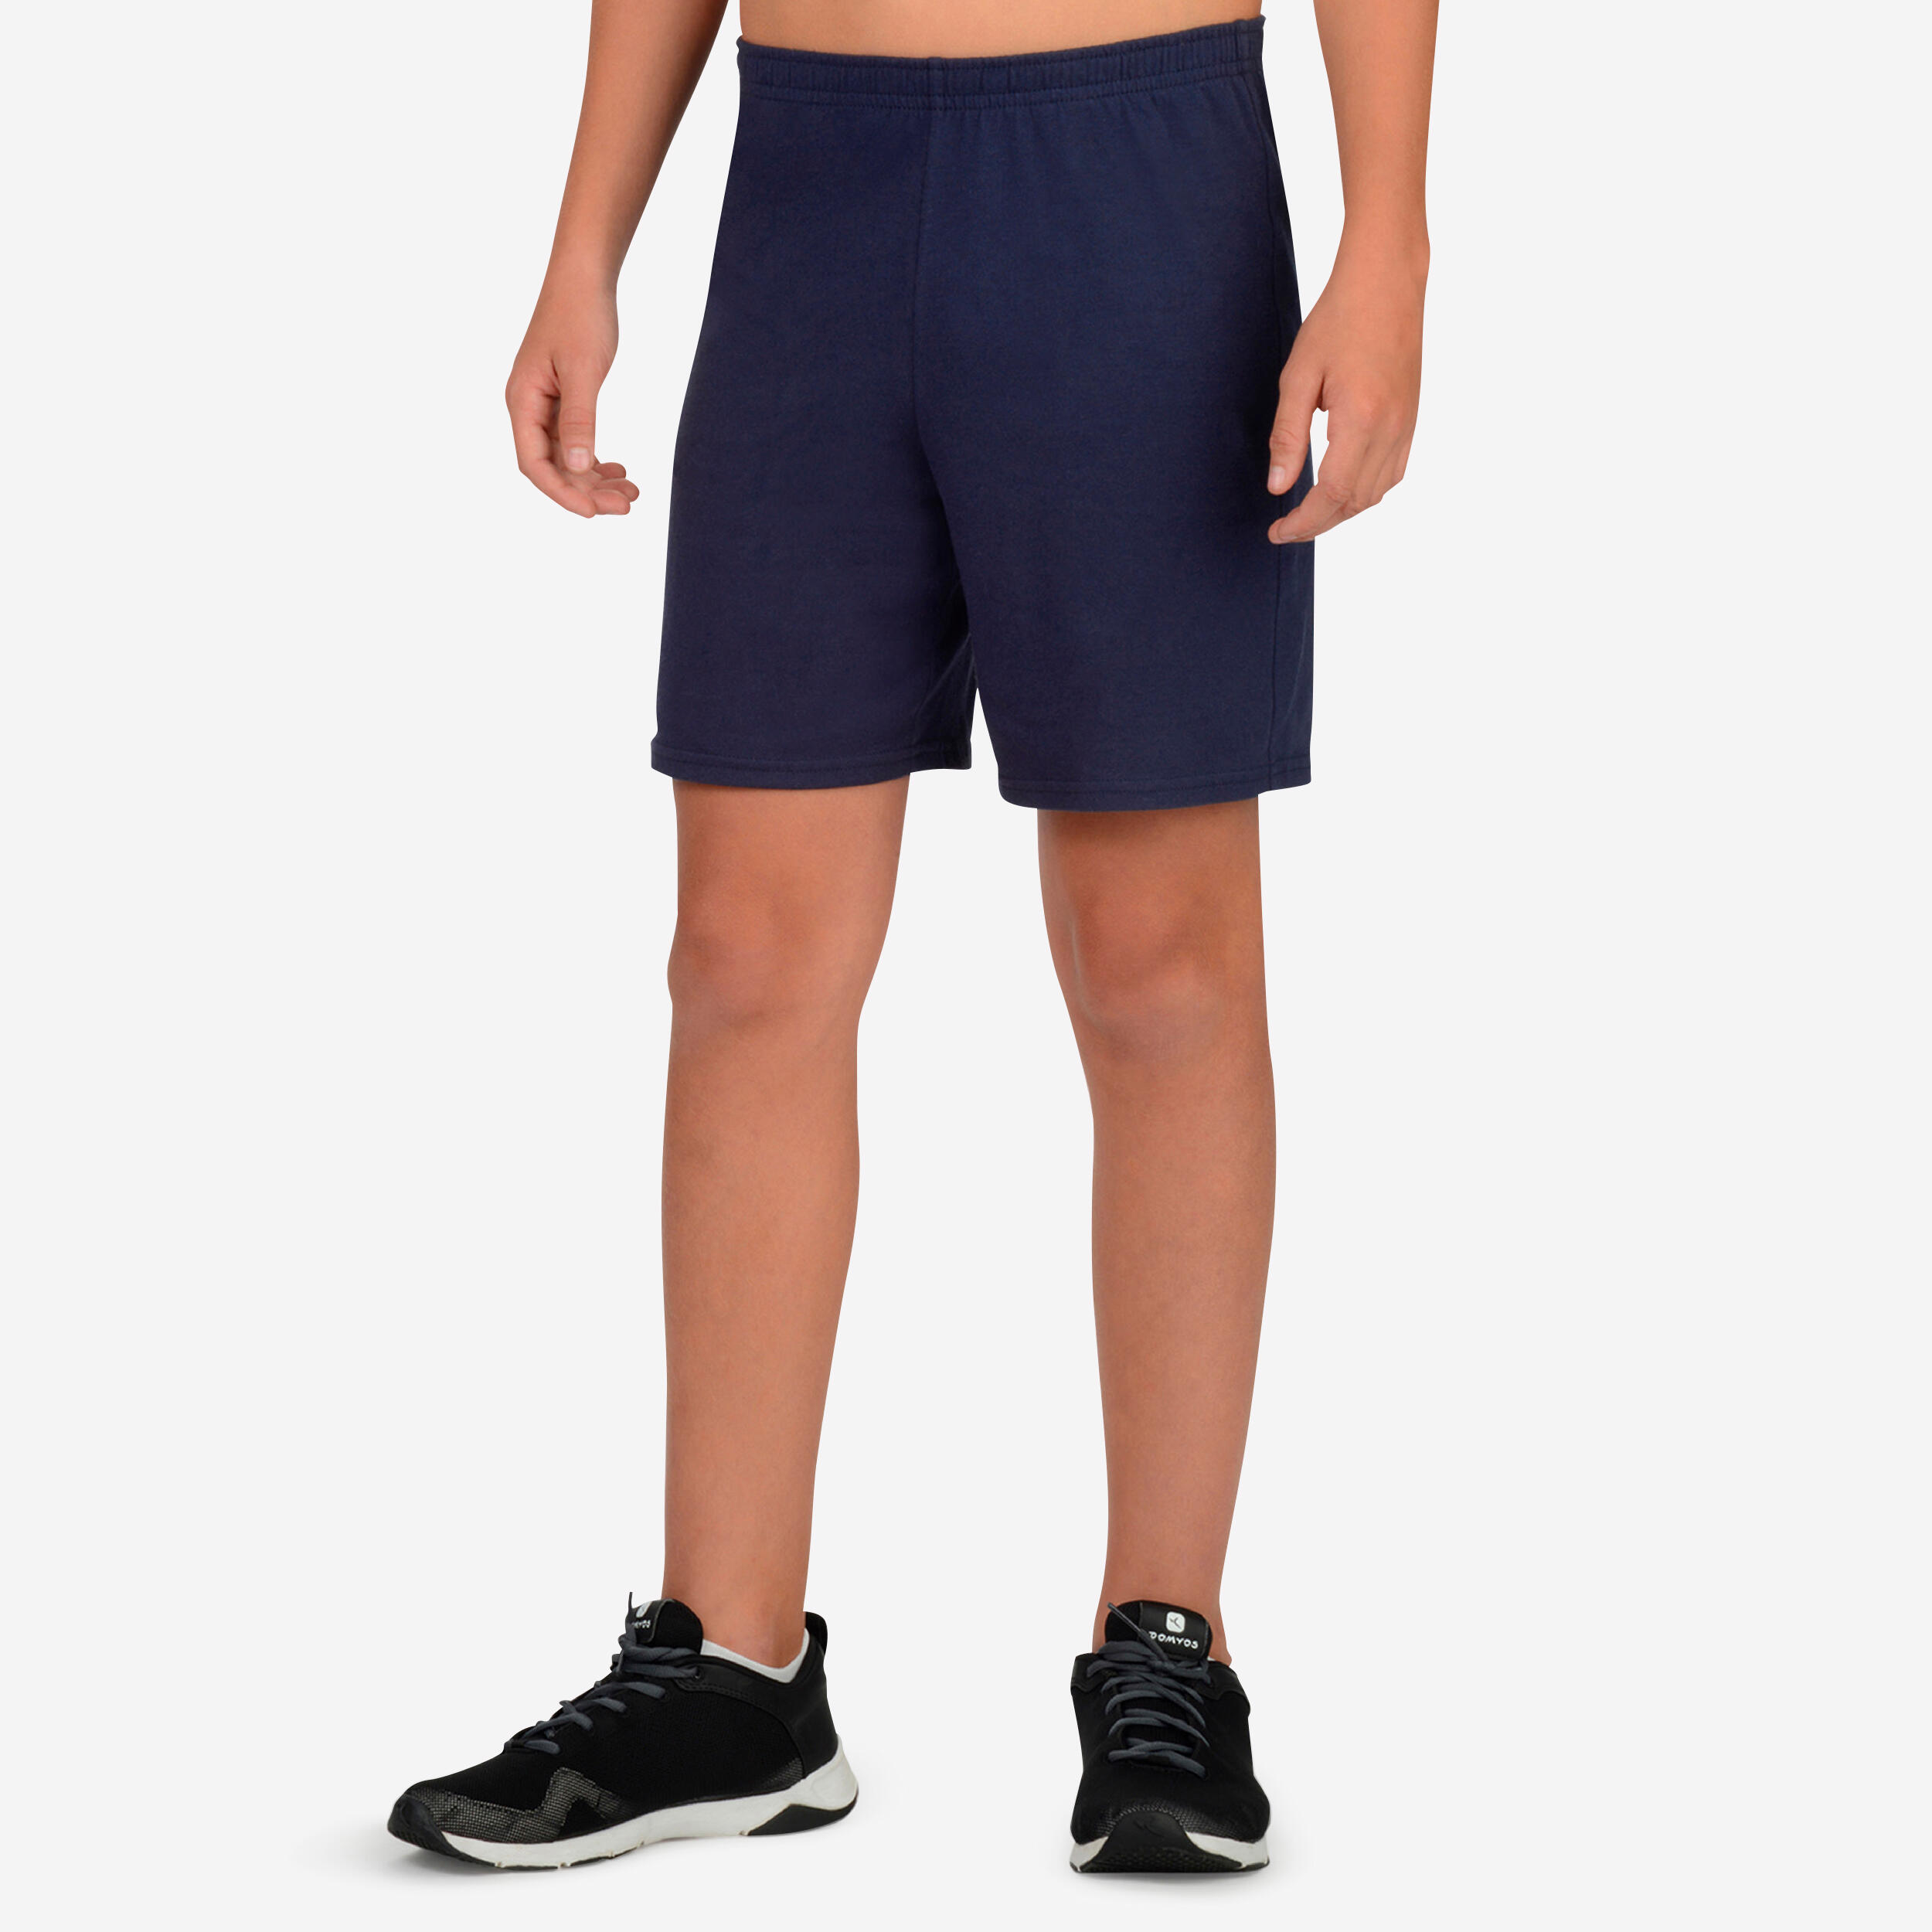 Kids' Gym Shorts - 100 Navy Blue - DOMYOS